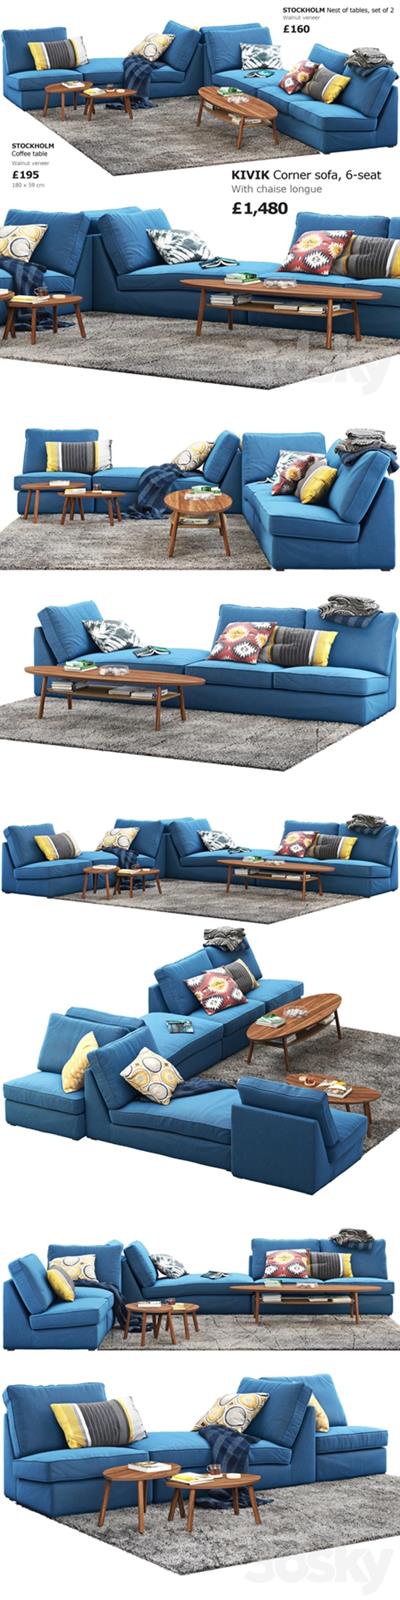 Sofa Ikea Kivik 6